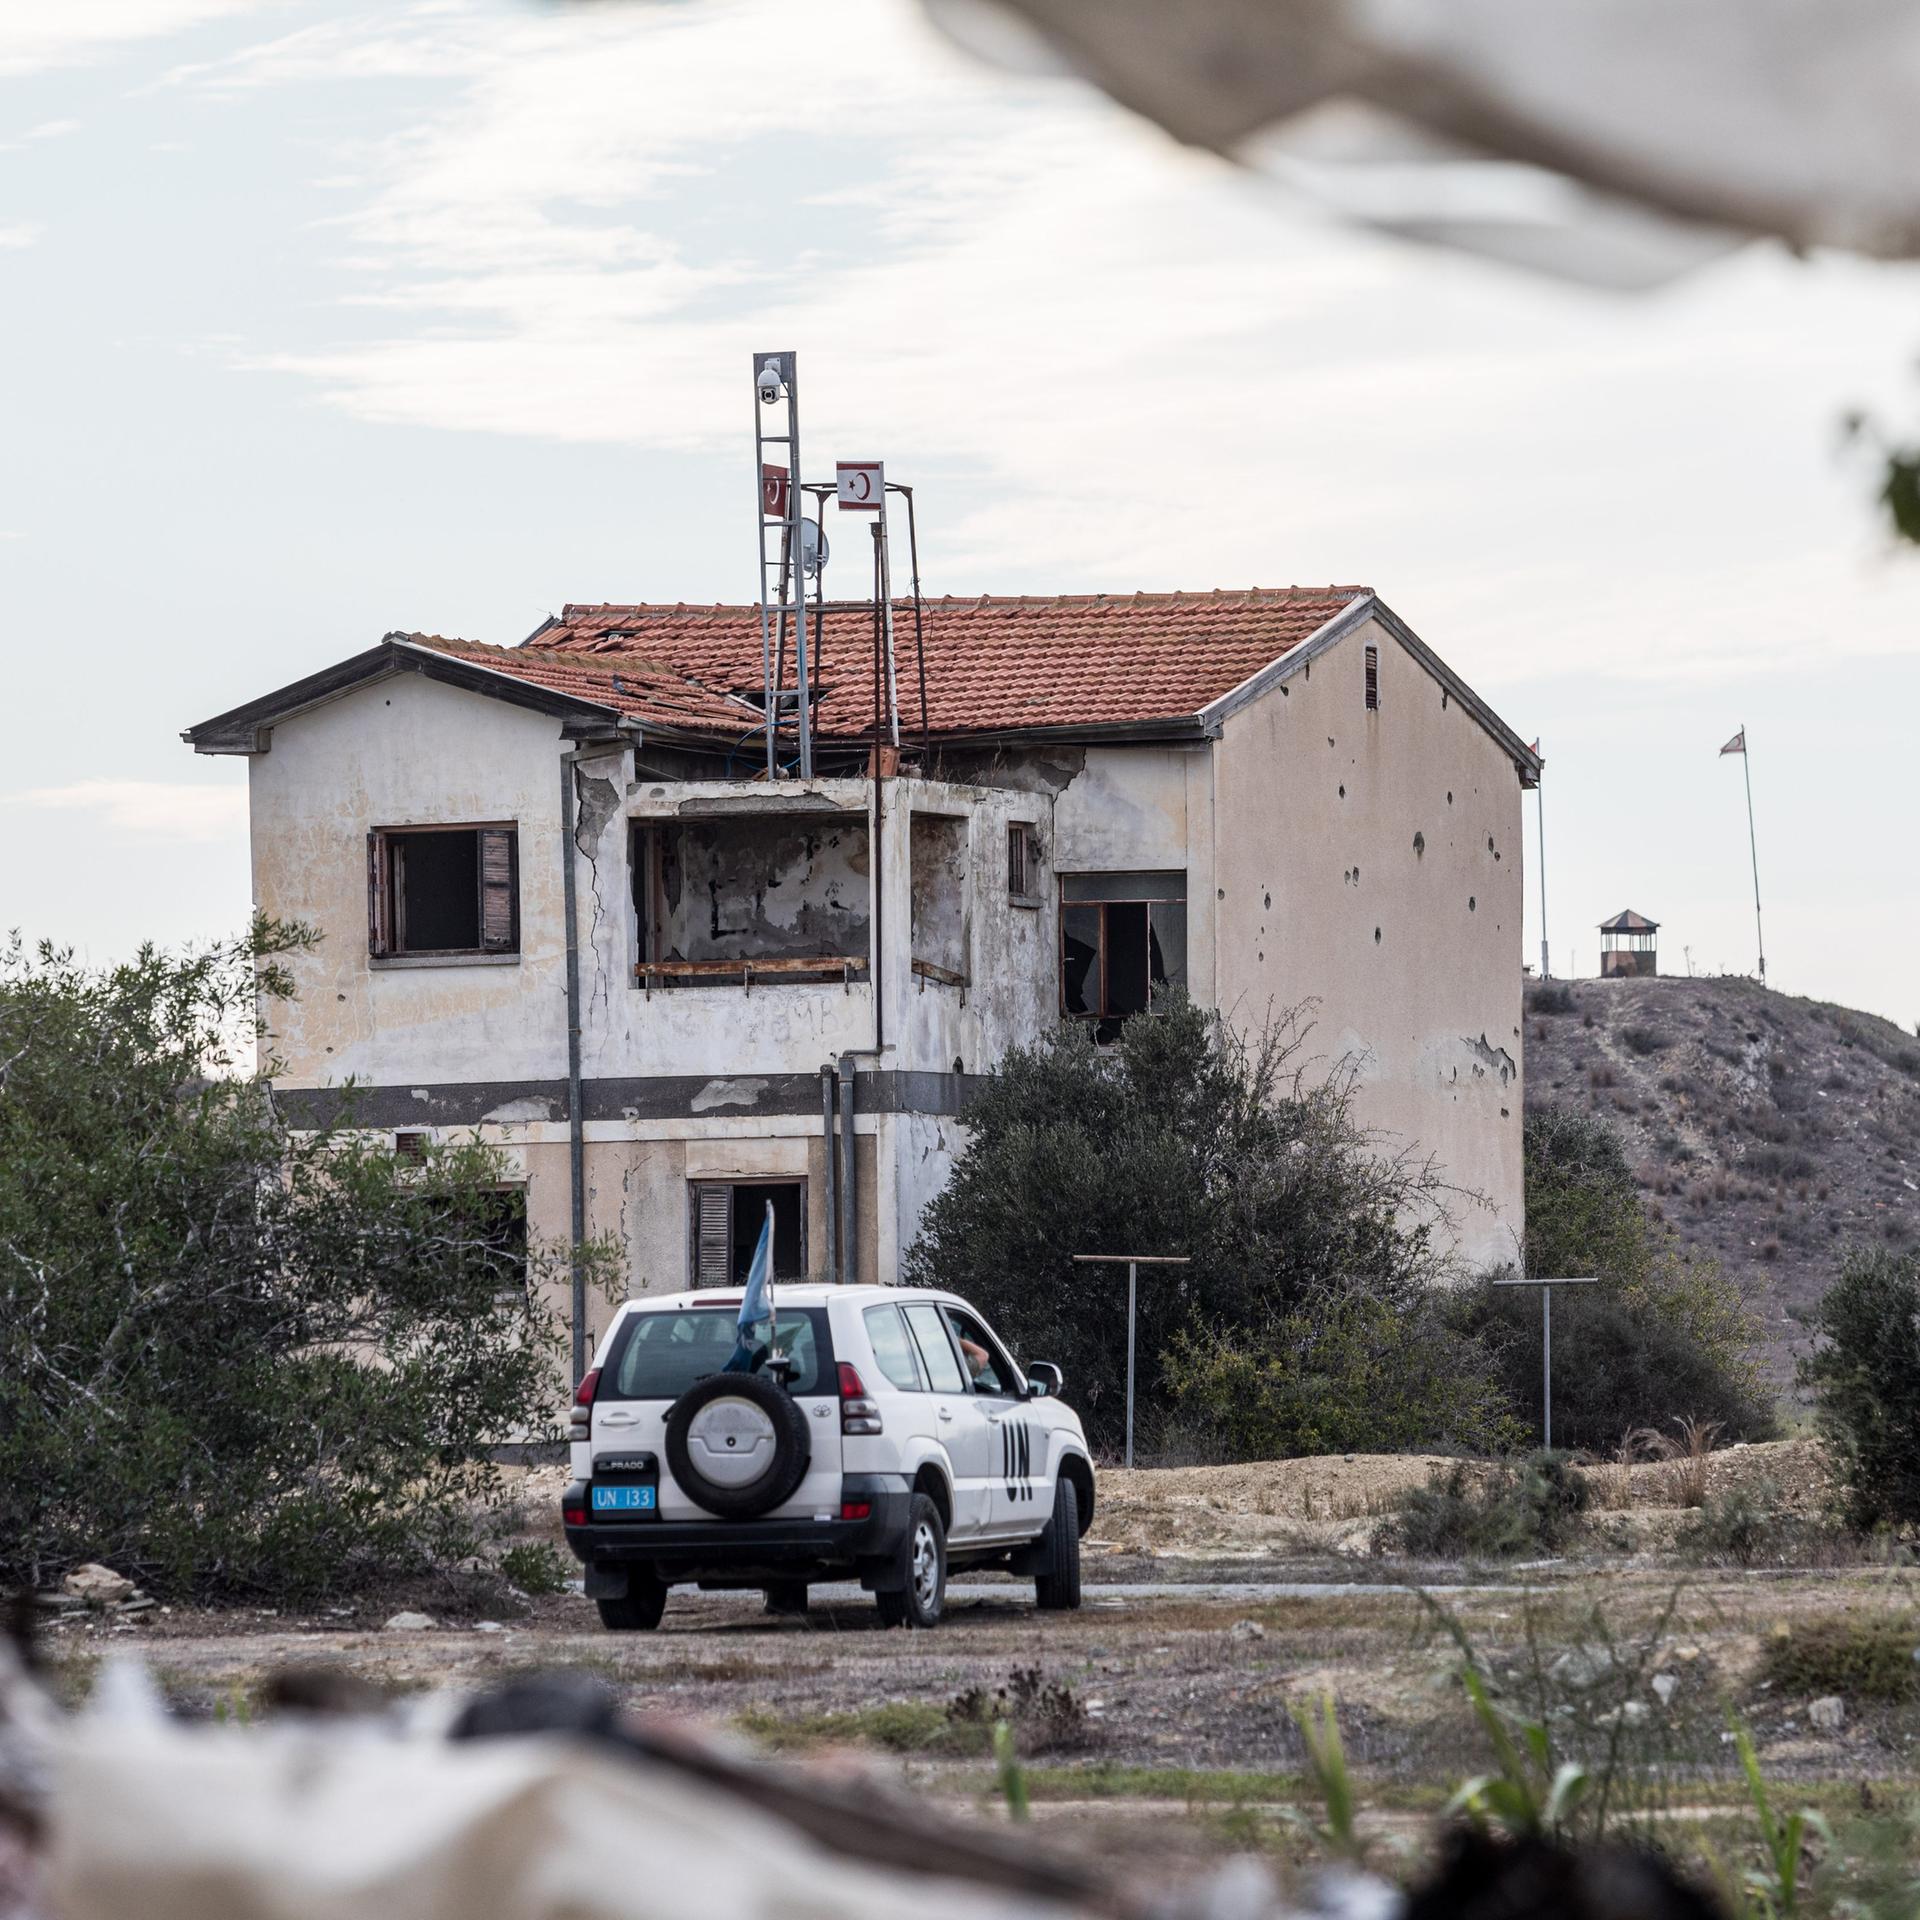 Zypern - Mit der UN-Friedenstruppe auf Patrouille durchs Niemandsland